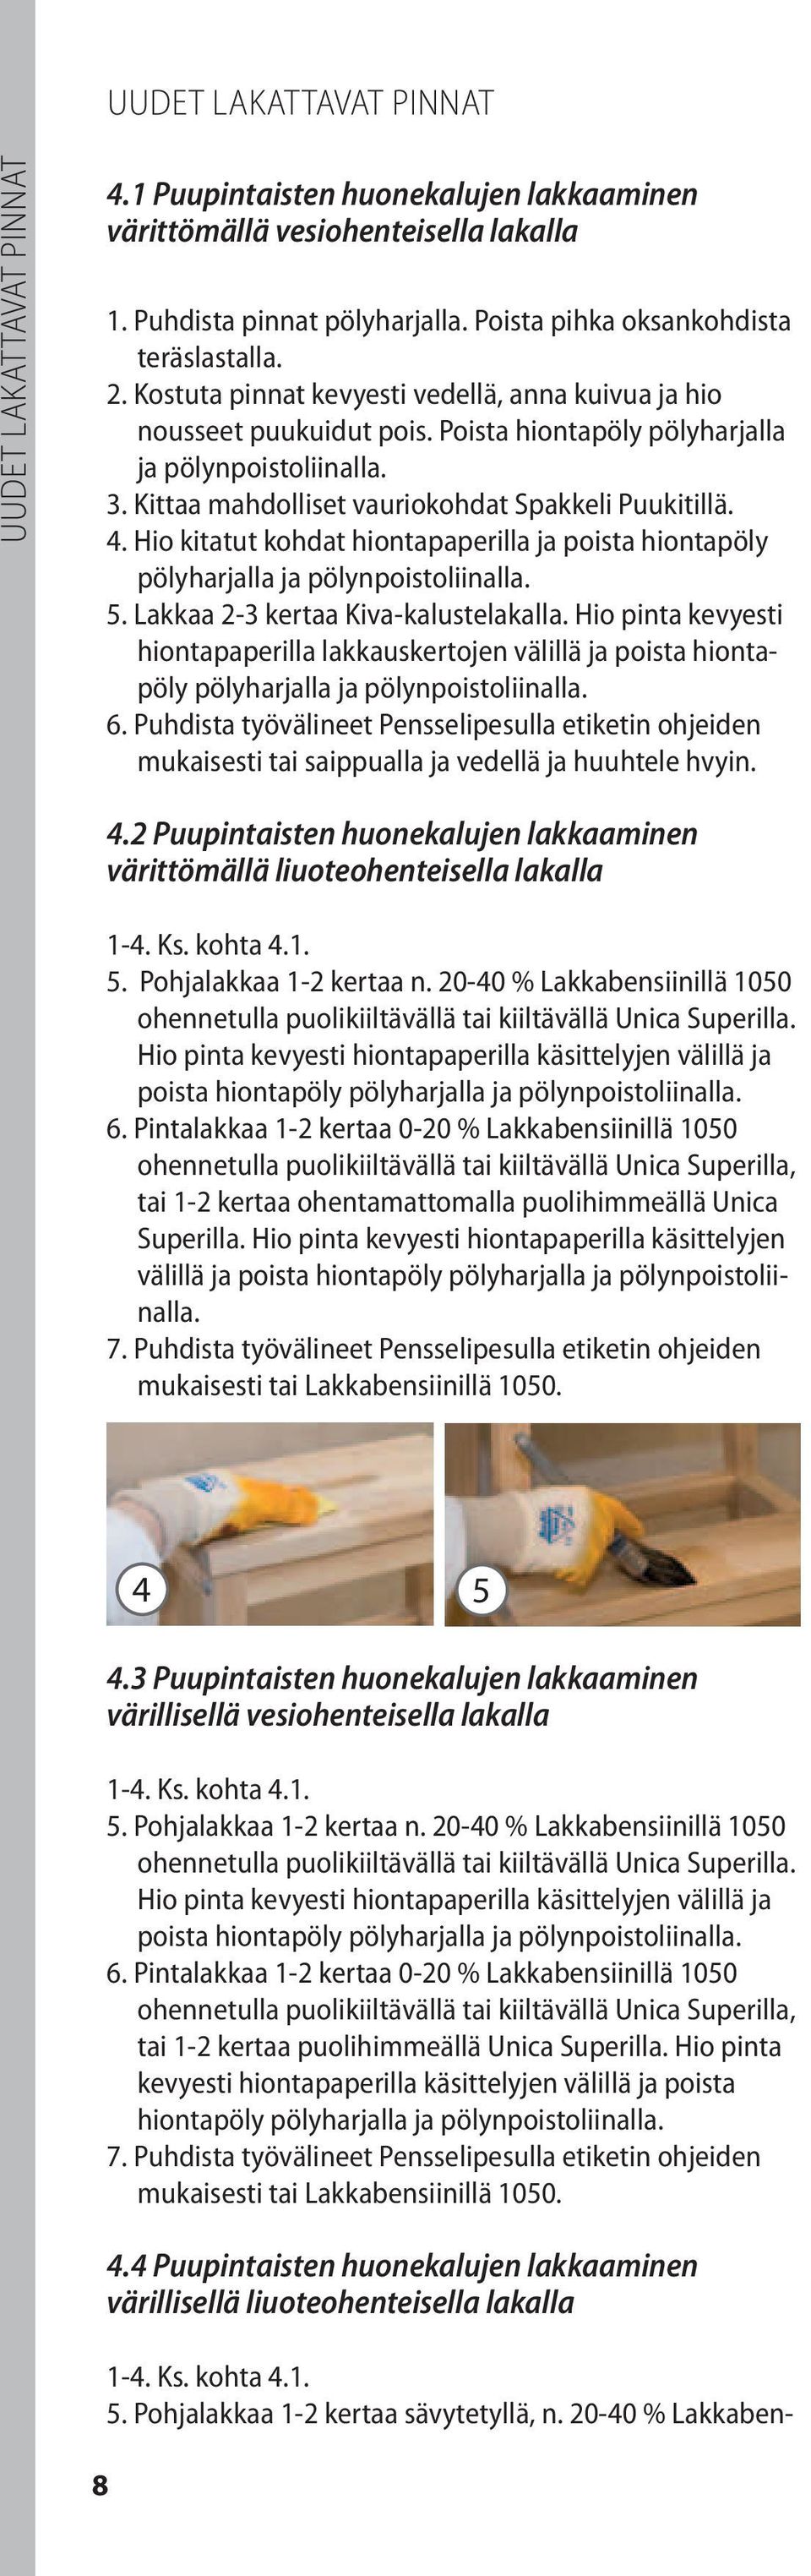 Kittaa mahdolliset vauriokohdat Spakkeli Puukitillä. 4. Hio kitatut kohdat hiontapaperilla ja poista hiontapöly pölyharjalla ja pölynpoistoliinalla. 5. Lakkaa 2-3 kertaa Kiva-kalustelakalla.